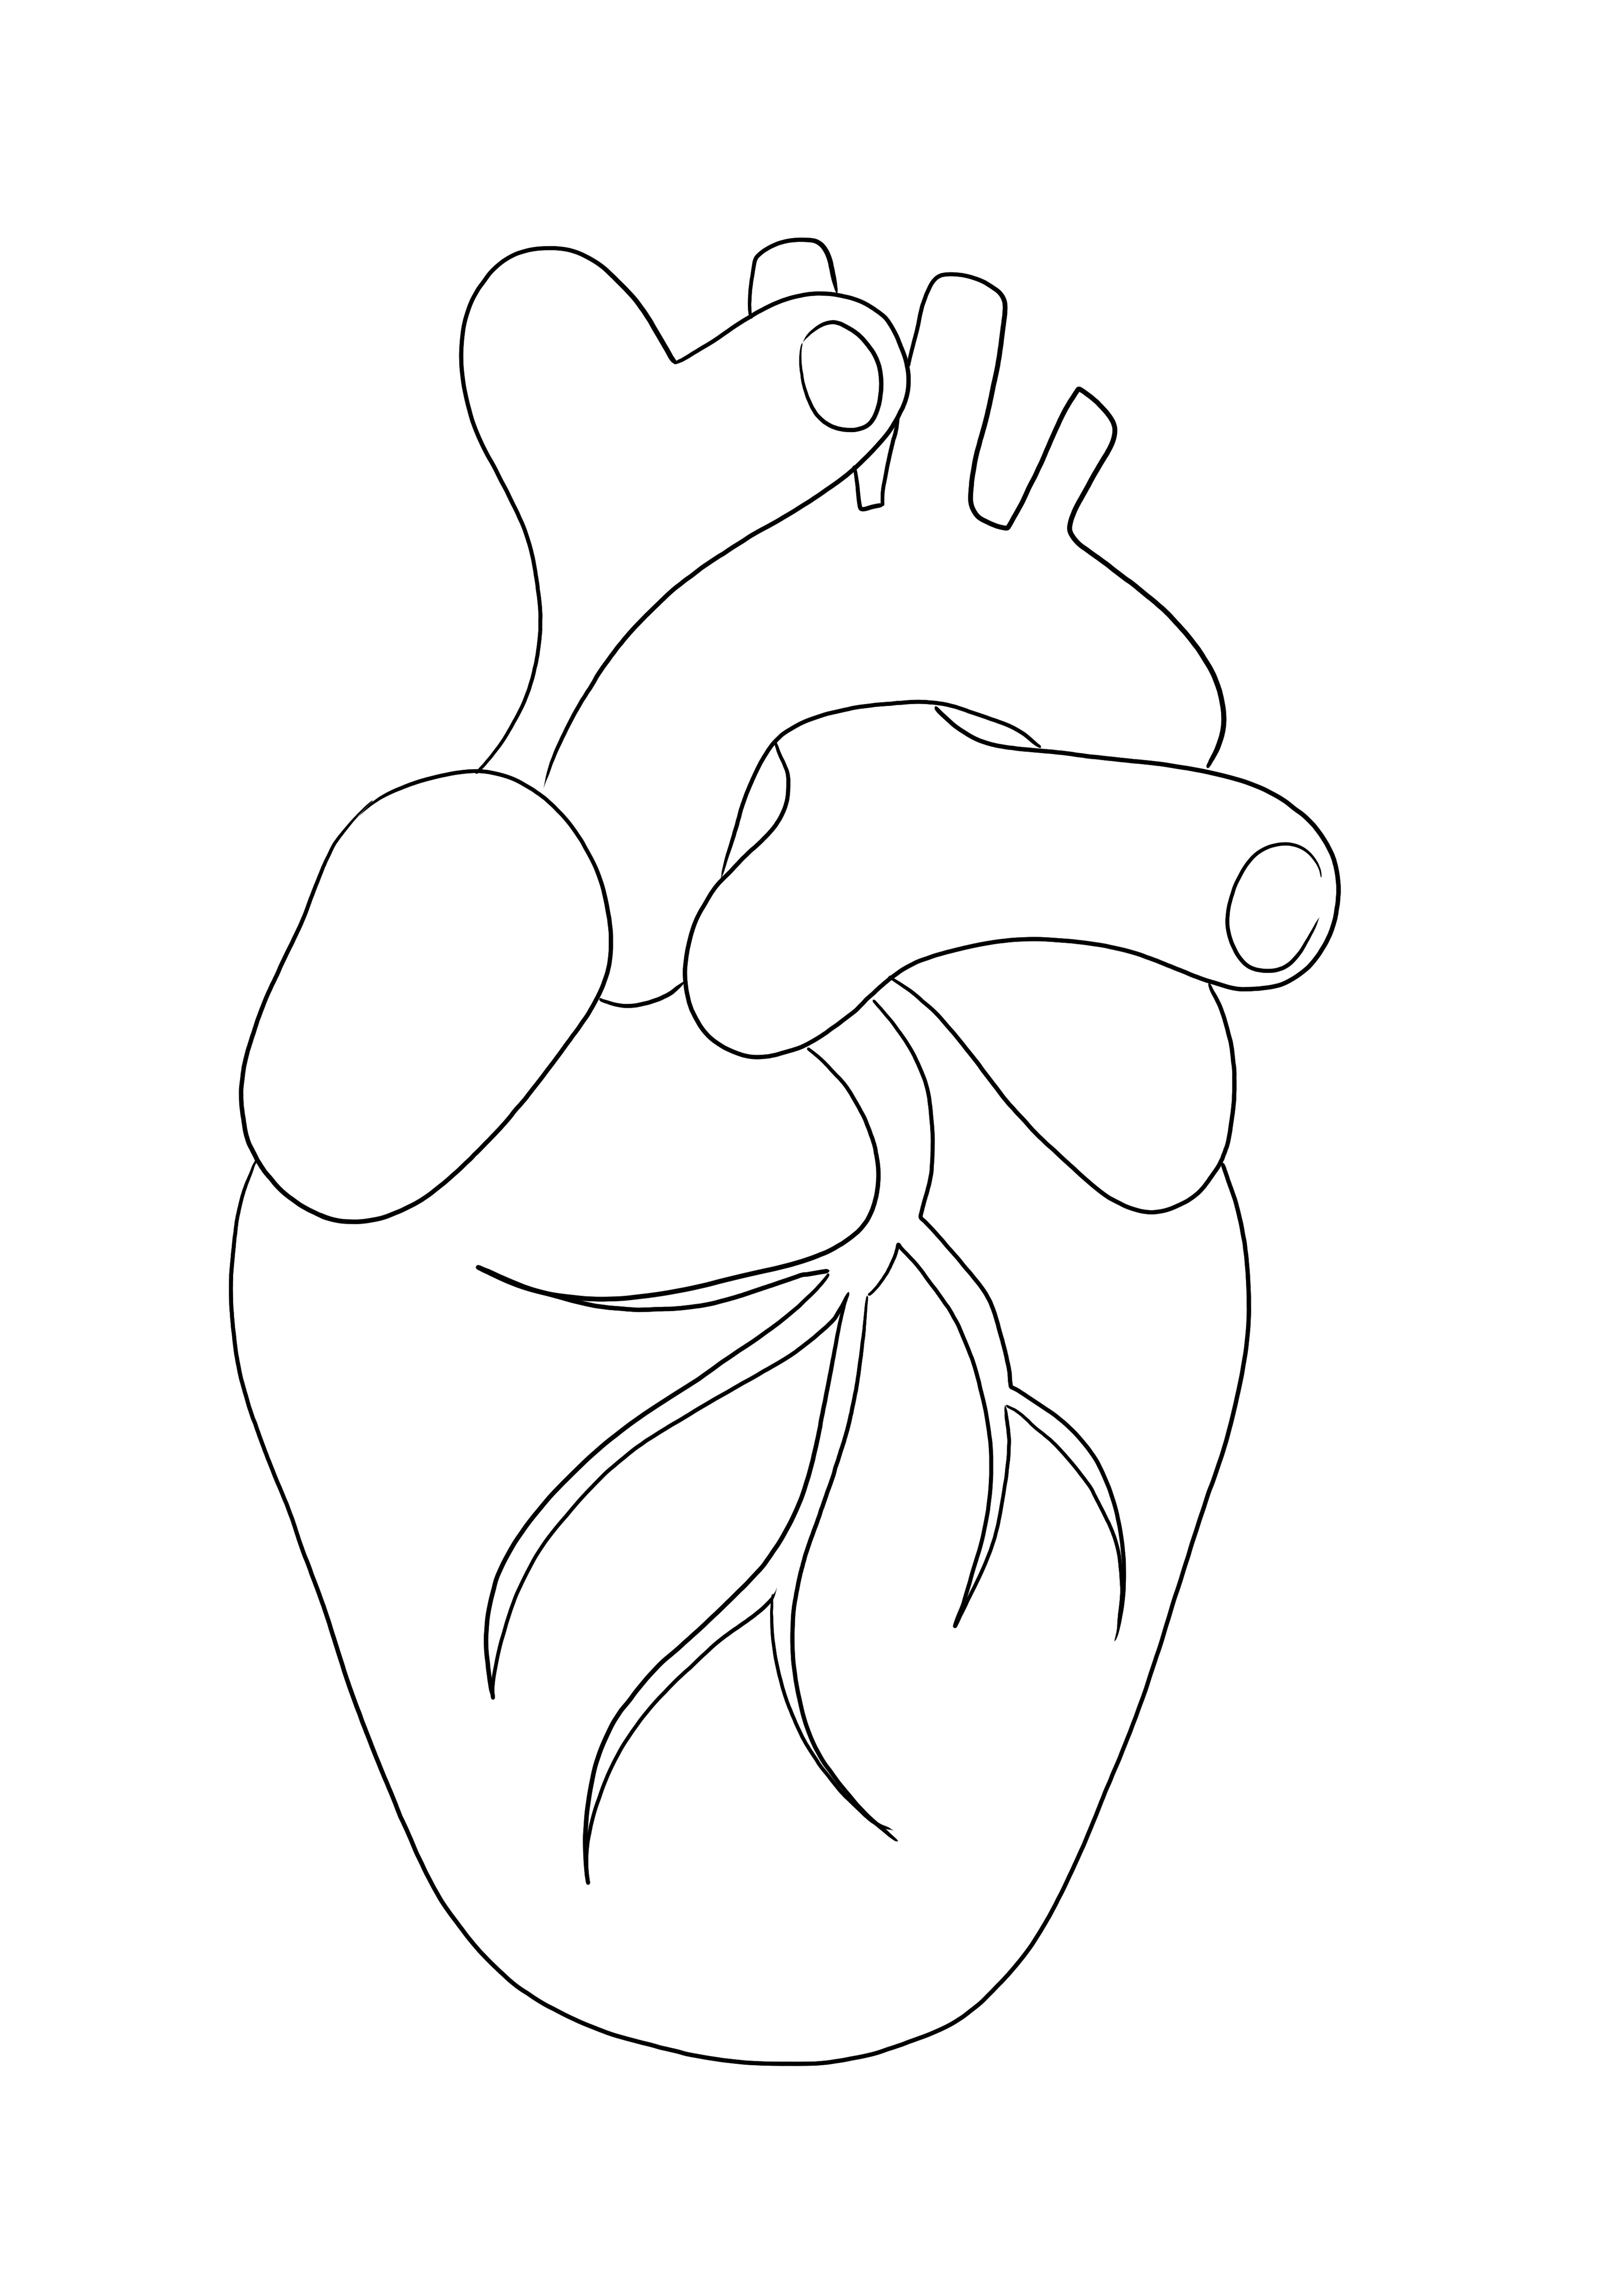 Human Heart - un imprimable gratuit à colorier pour que les enfants apprennent l'anatomie